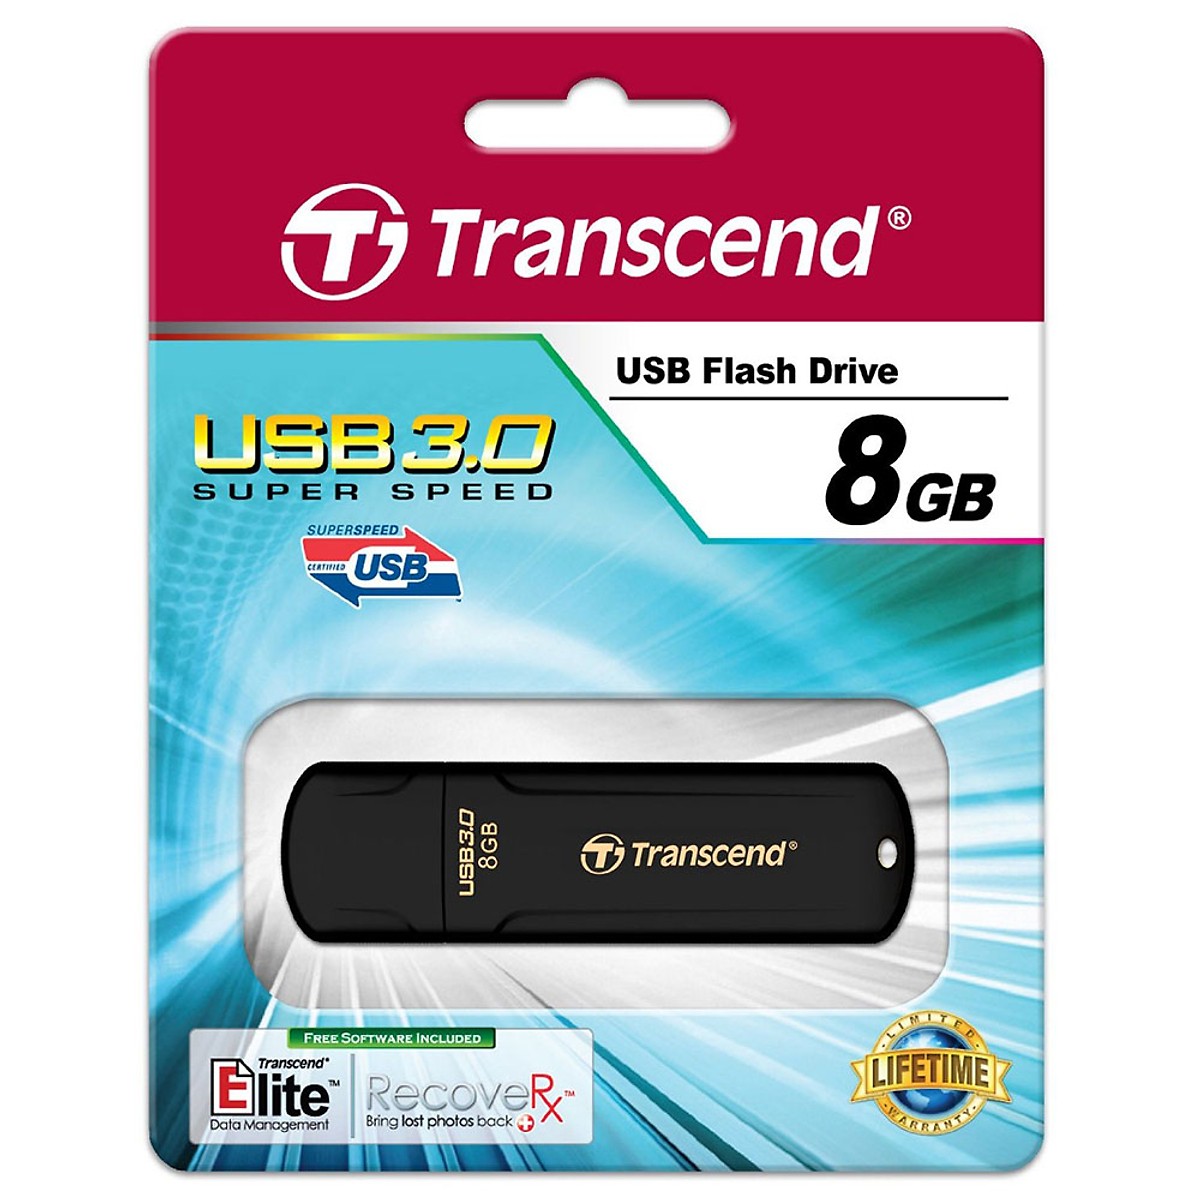 USB Transcend 8GB JF700 